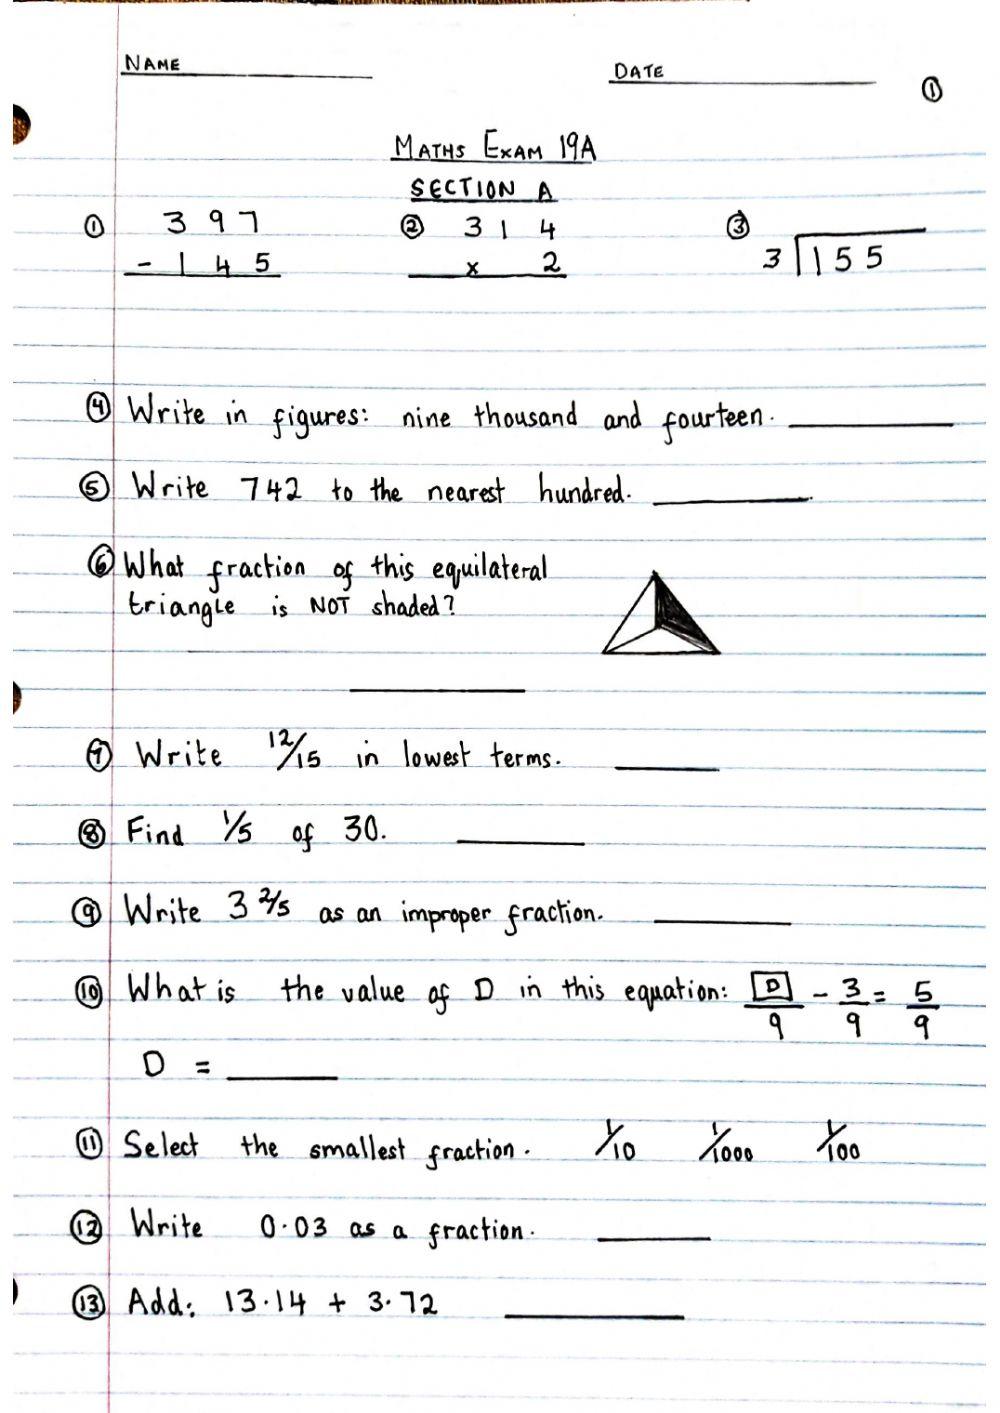 Math Exam 19A